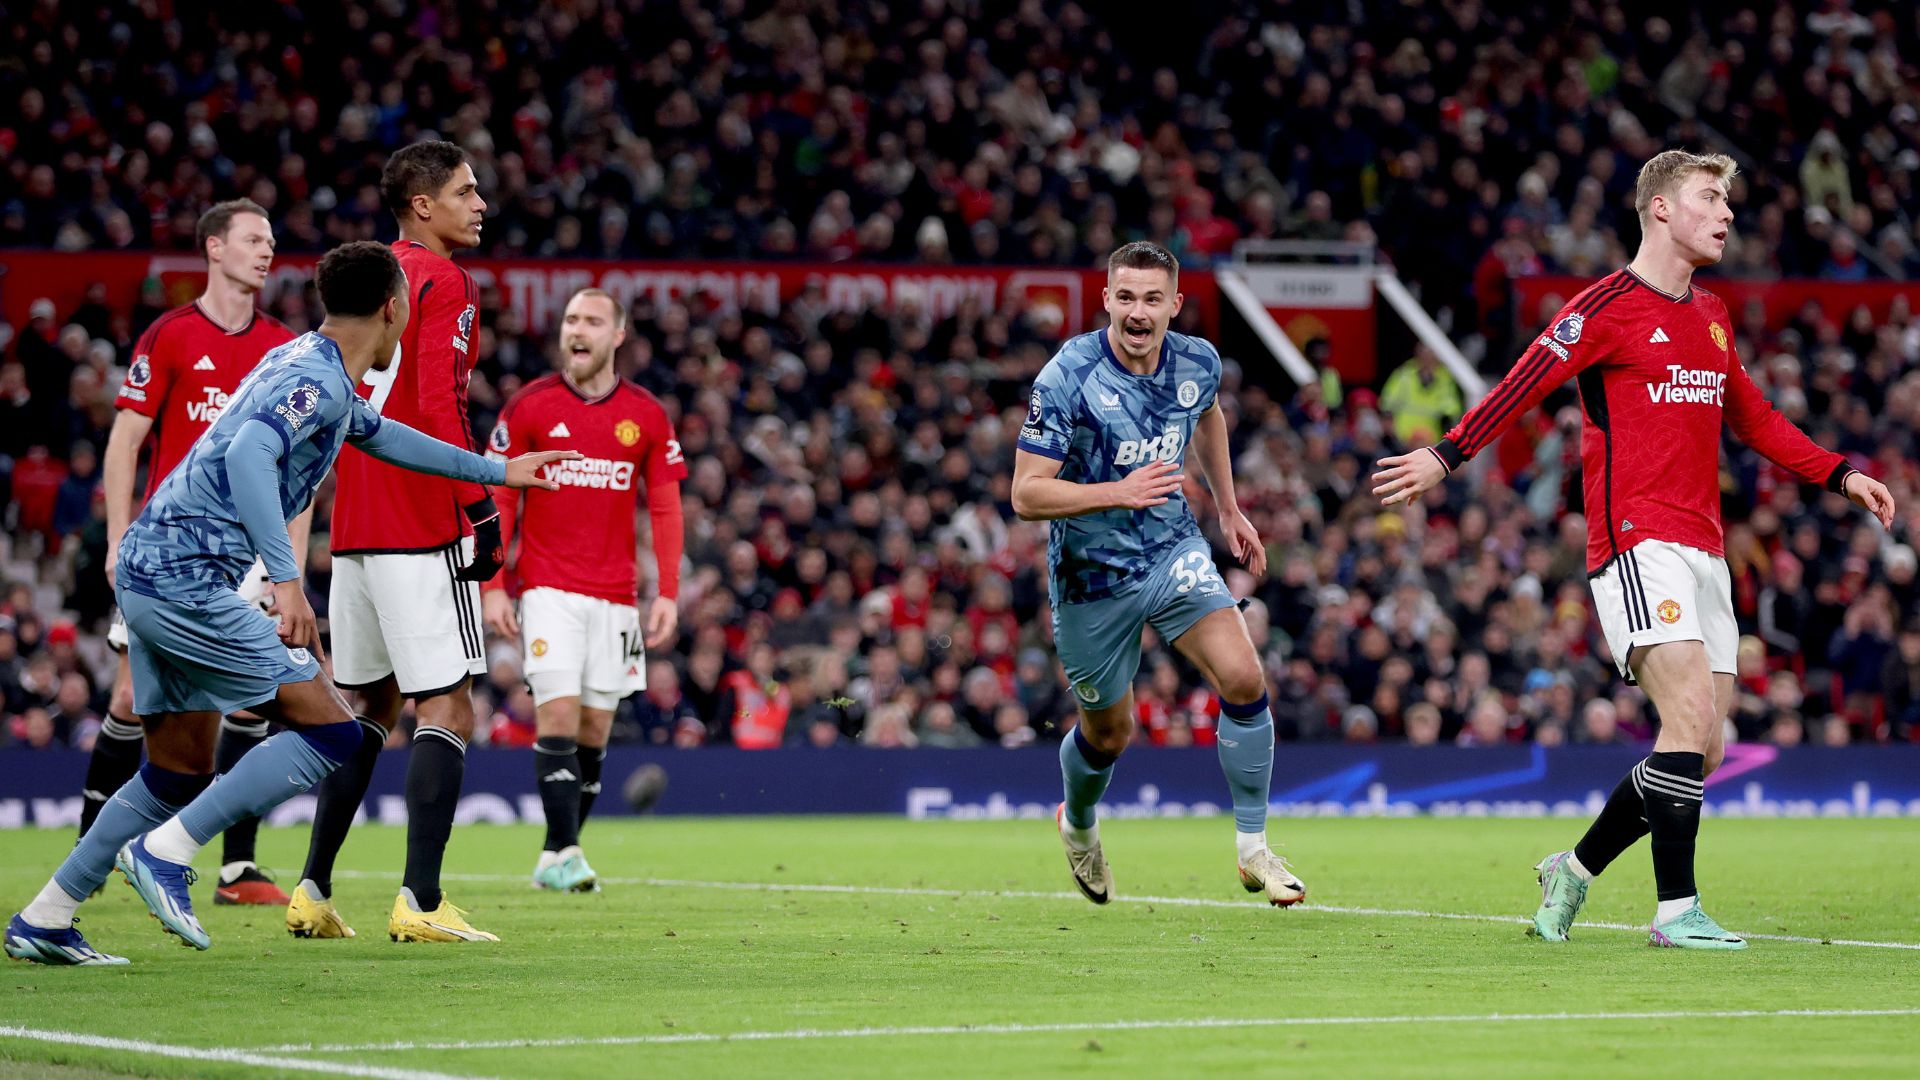 Momento do segundo gol do Aston Villa (Crédito: Getty Images)